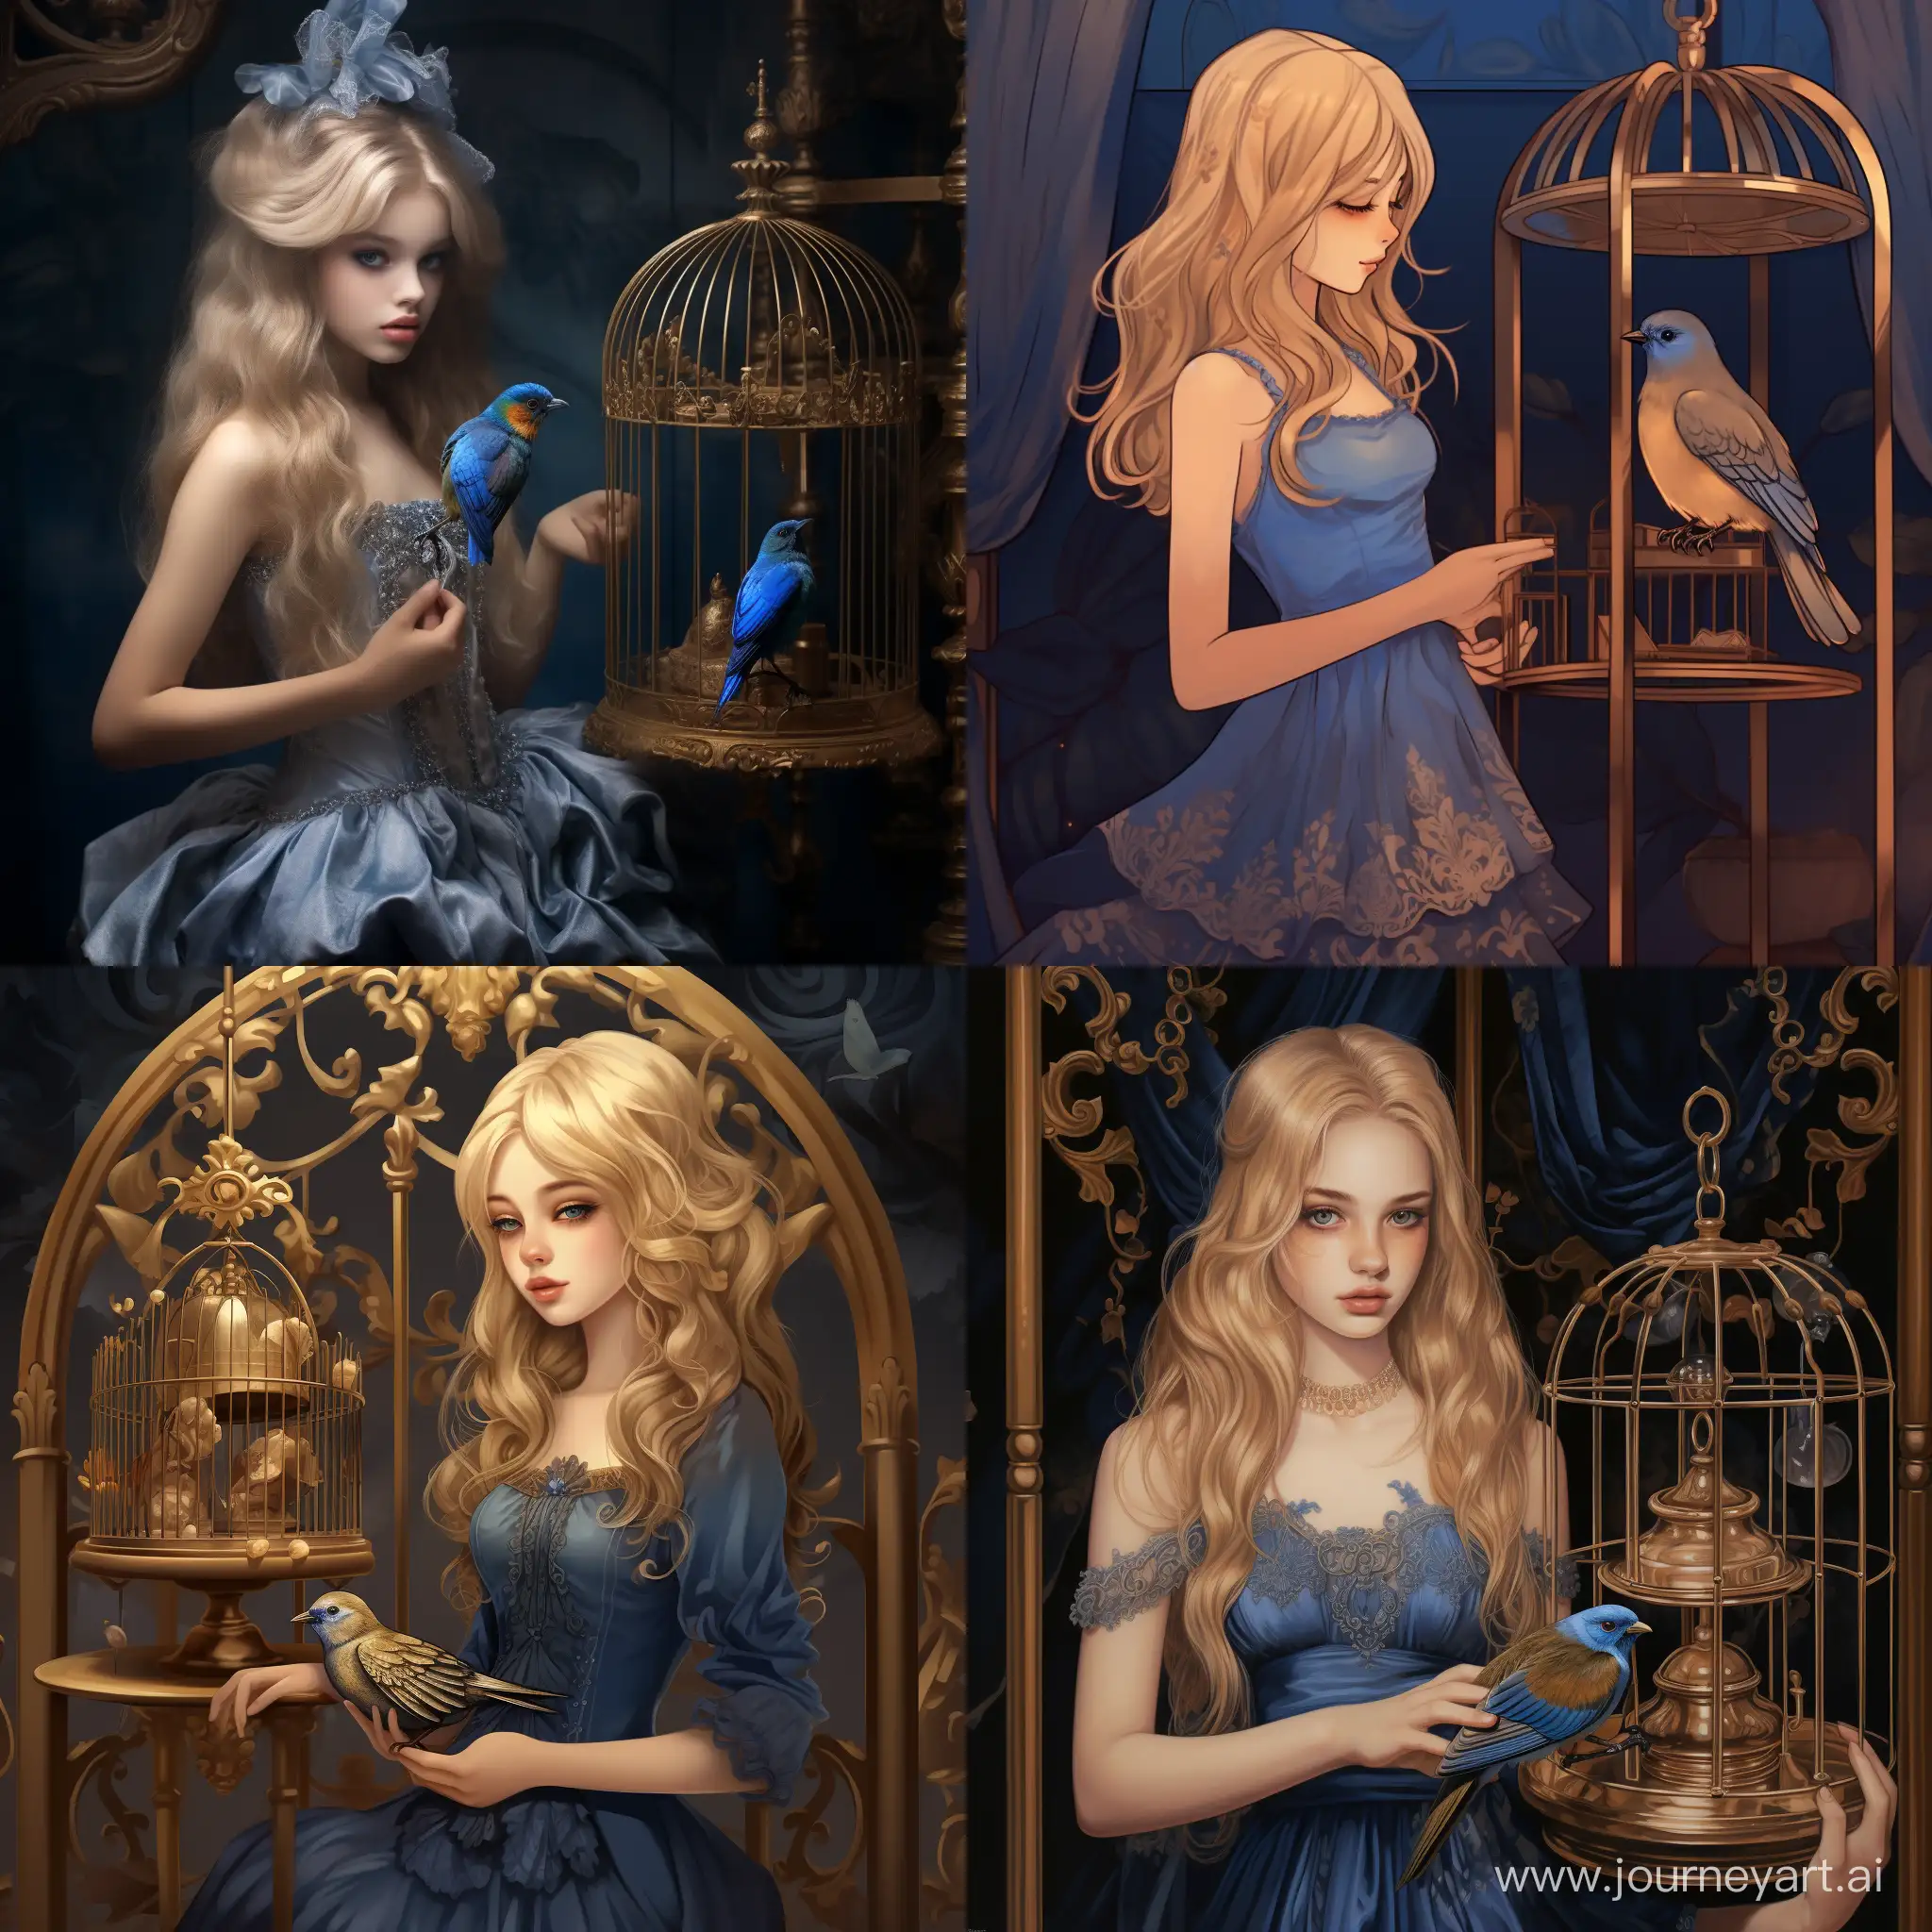 Девушка с блондинистыми волосами стоит рядом с золотой птичье клеткой, внутри маленькая синяя птица. На девушке синее платье с золотыми оборками